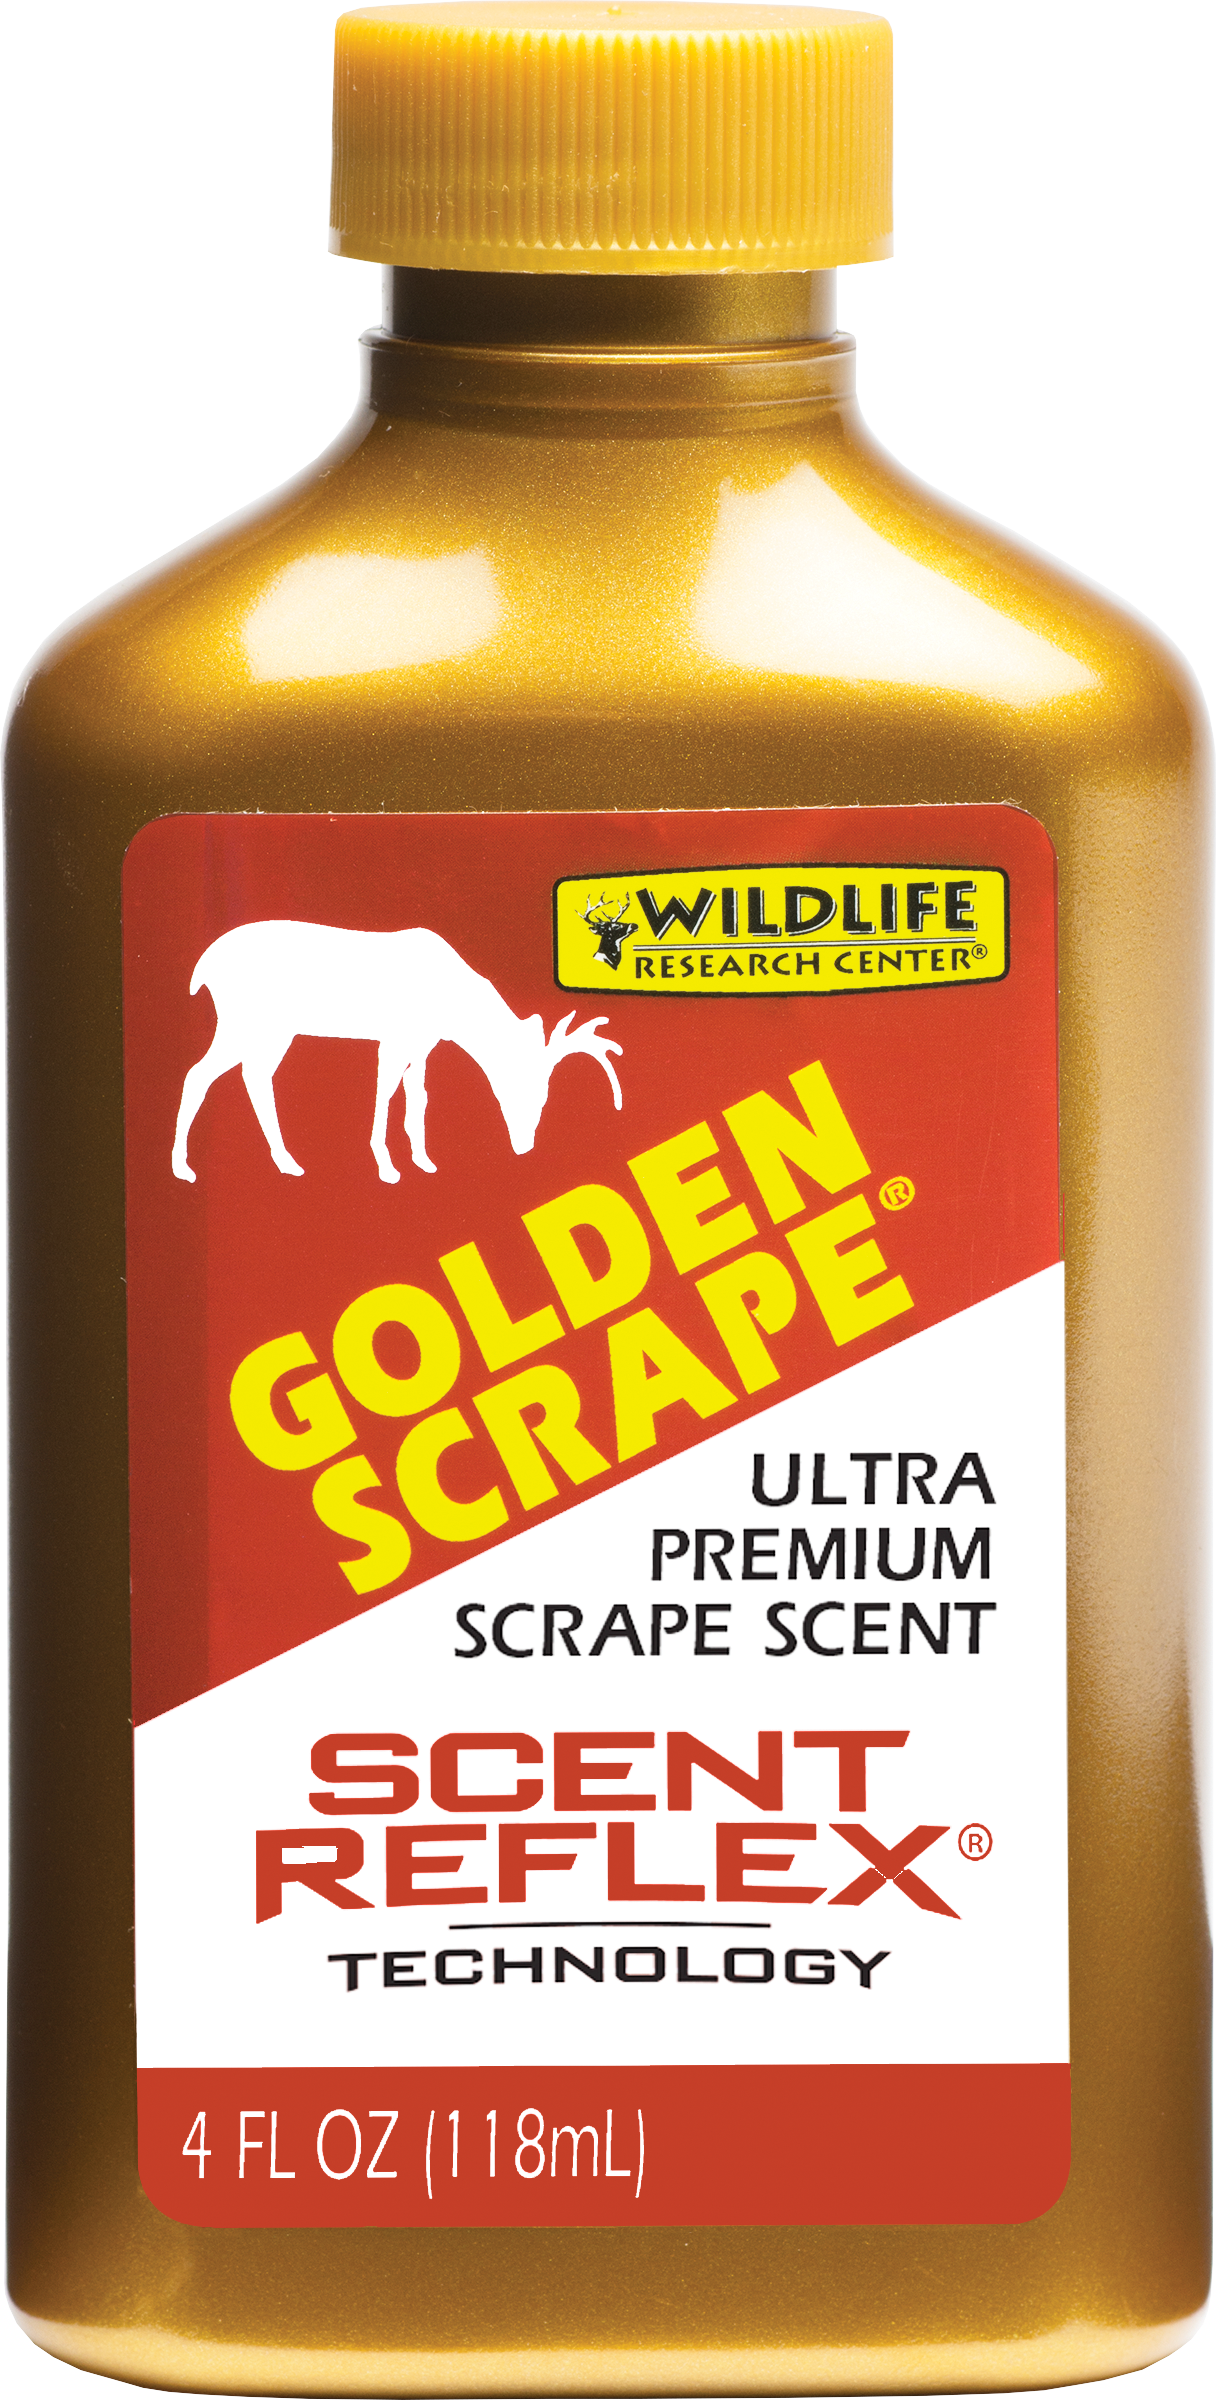 Golden Scrape®